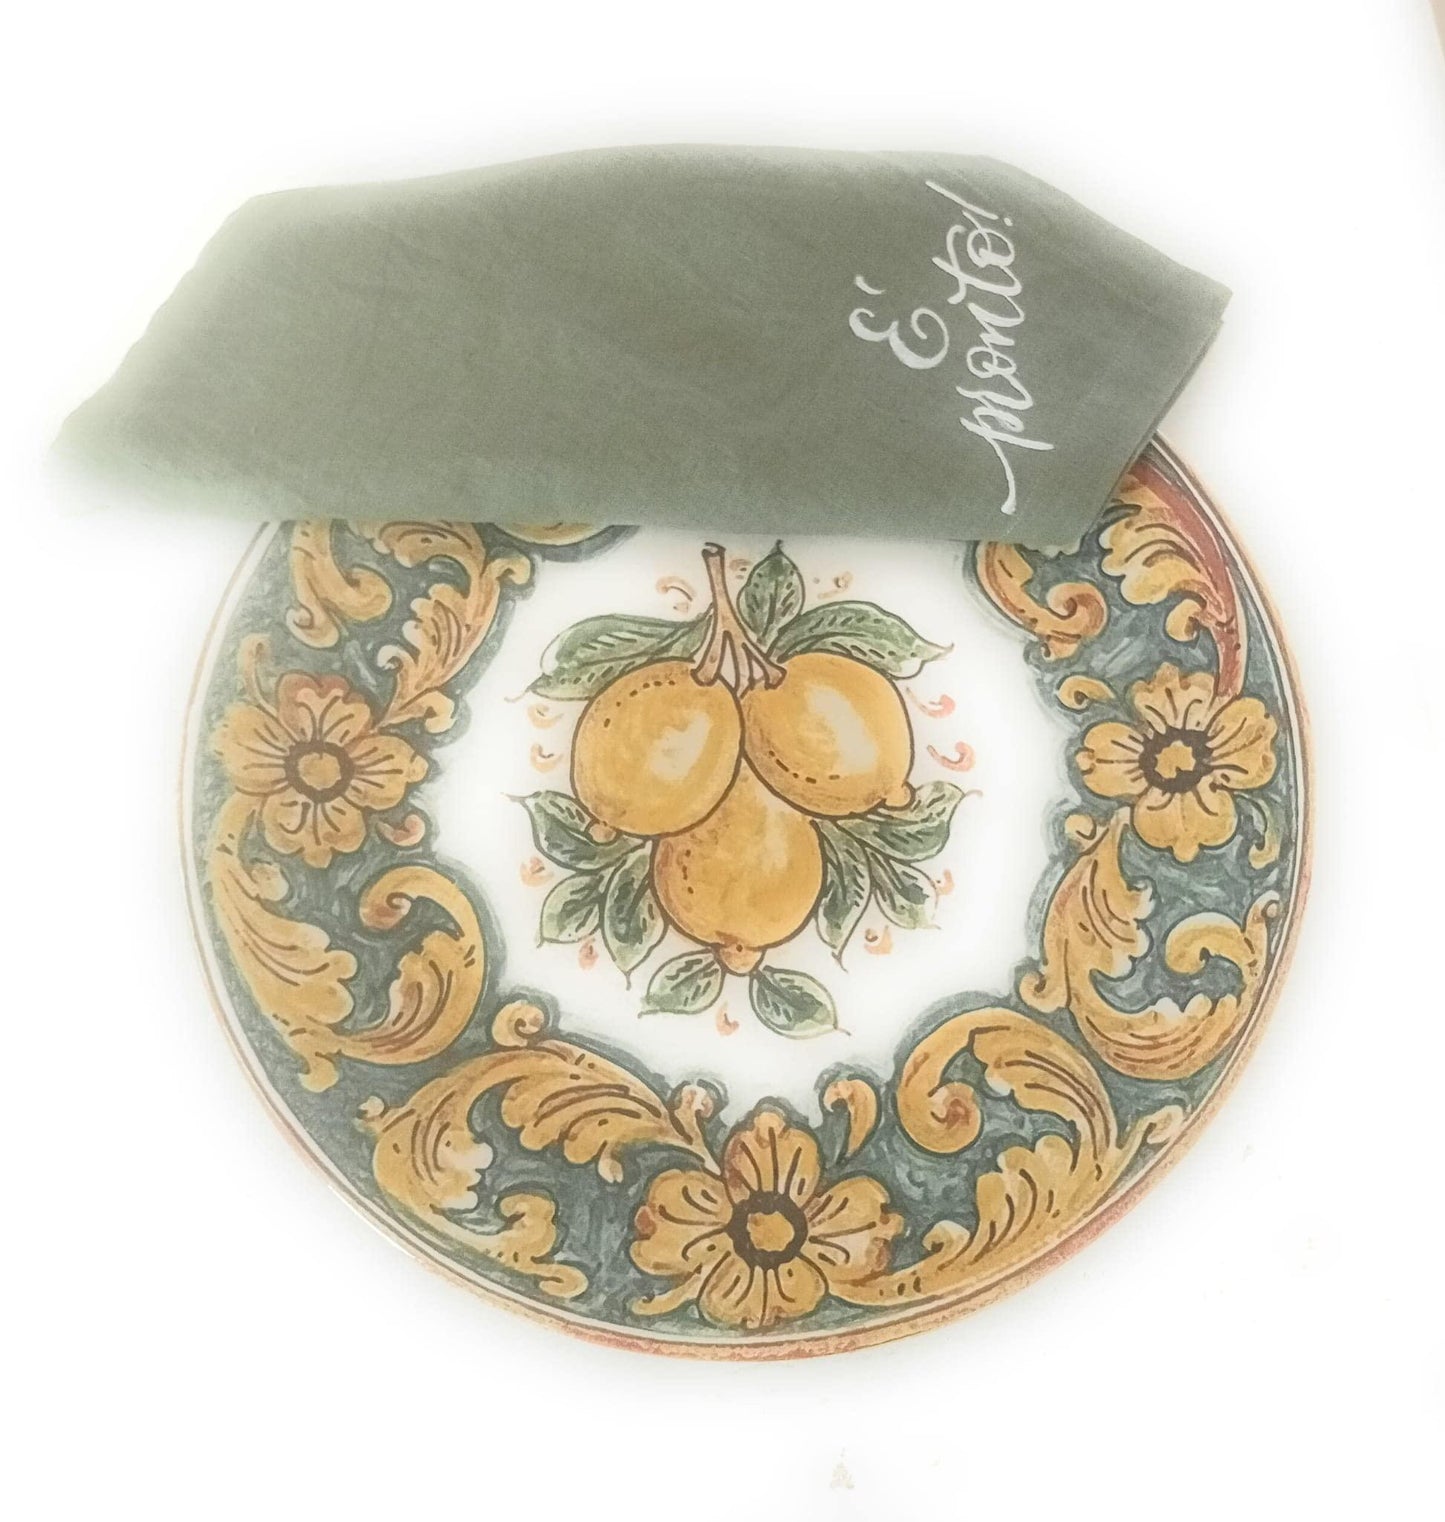 Piatti Piani in Porcellana, realizzati a mano, Limoni di Caltagirone - MARIKA DE PAOLA - HOME DECOR